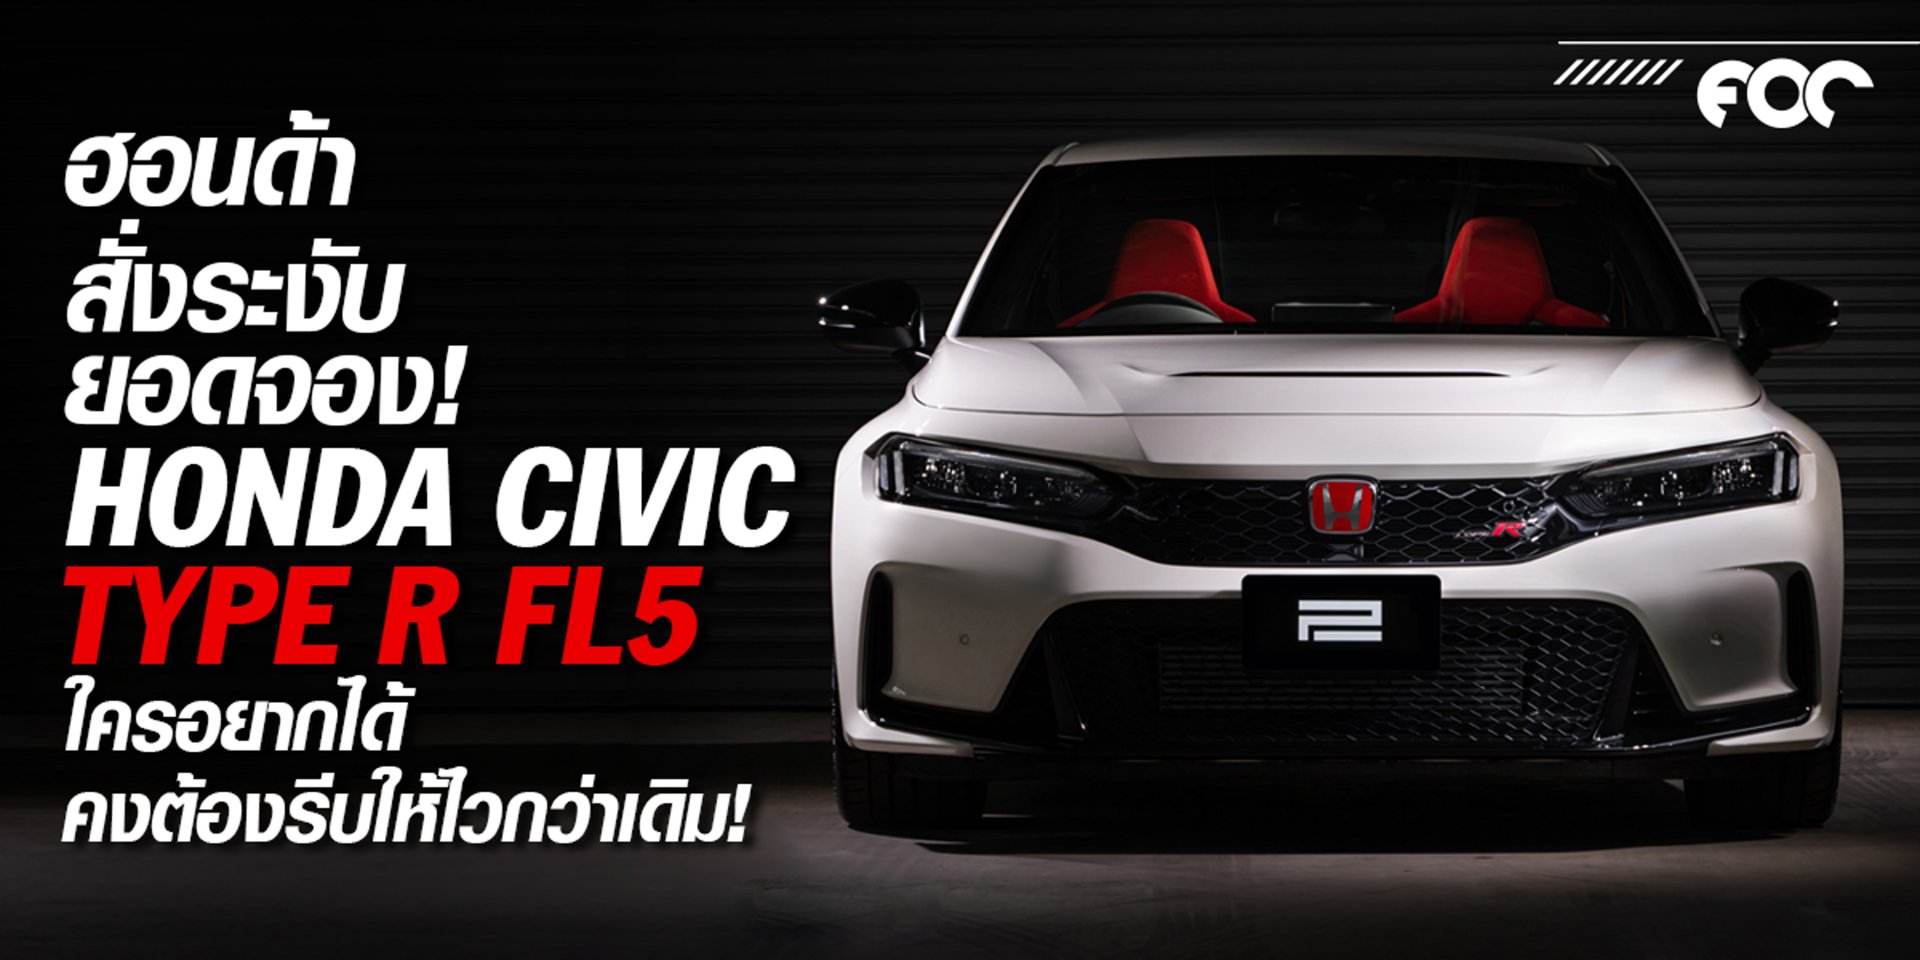 ฮอนด้าสั่งระงับยอดจอง Civic Type R Fl5 ใครอยากได้คงต้องรีบให้ไวกว่าเดิม!